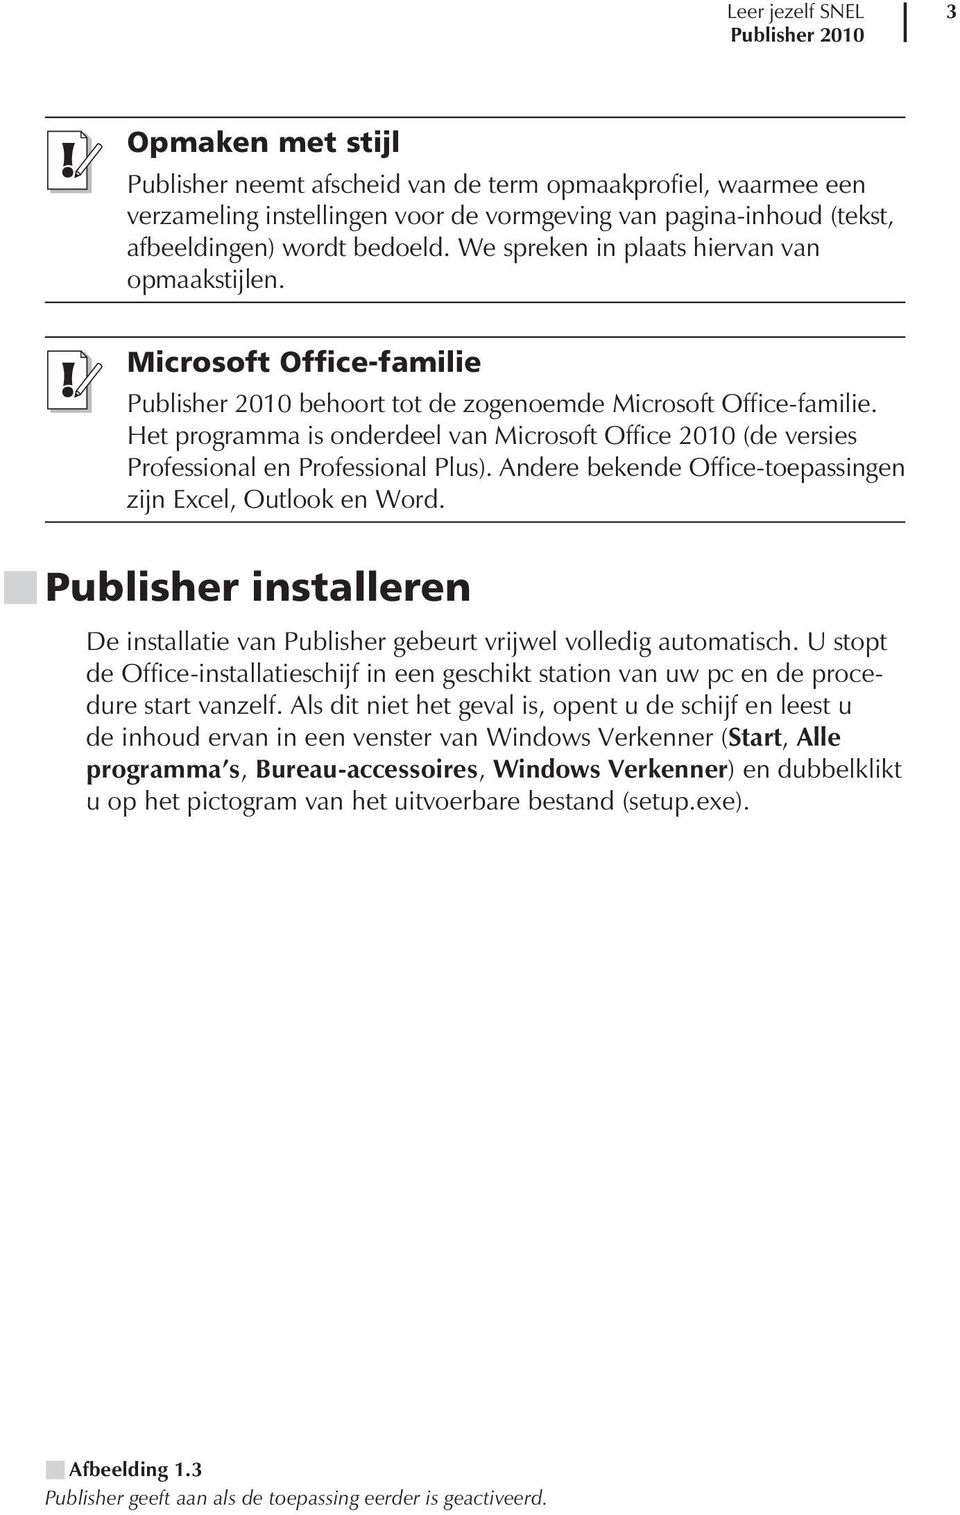 Het programma is onderdeel van Microsoft Office 2010 (de versies Professional en Professional Plus). Andere bekende Office-toepassingen zijn Excel, Outlook en Word.